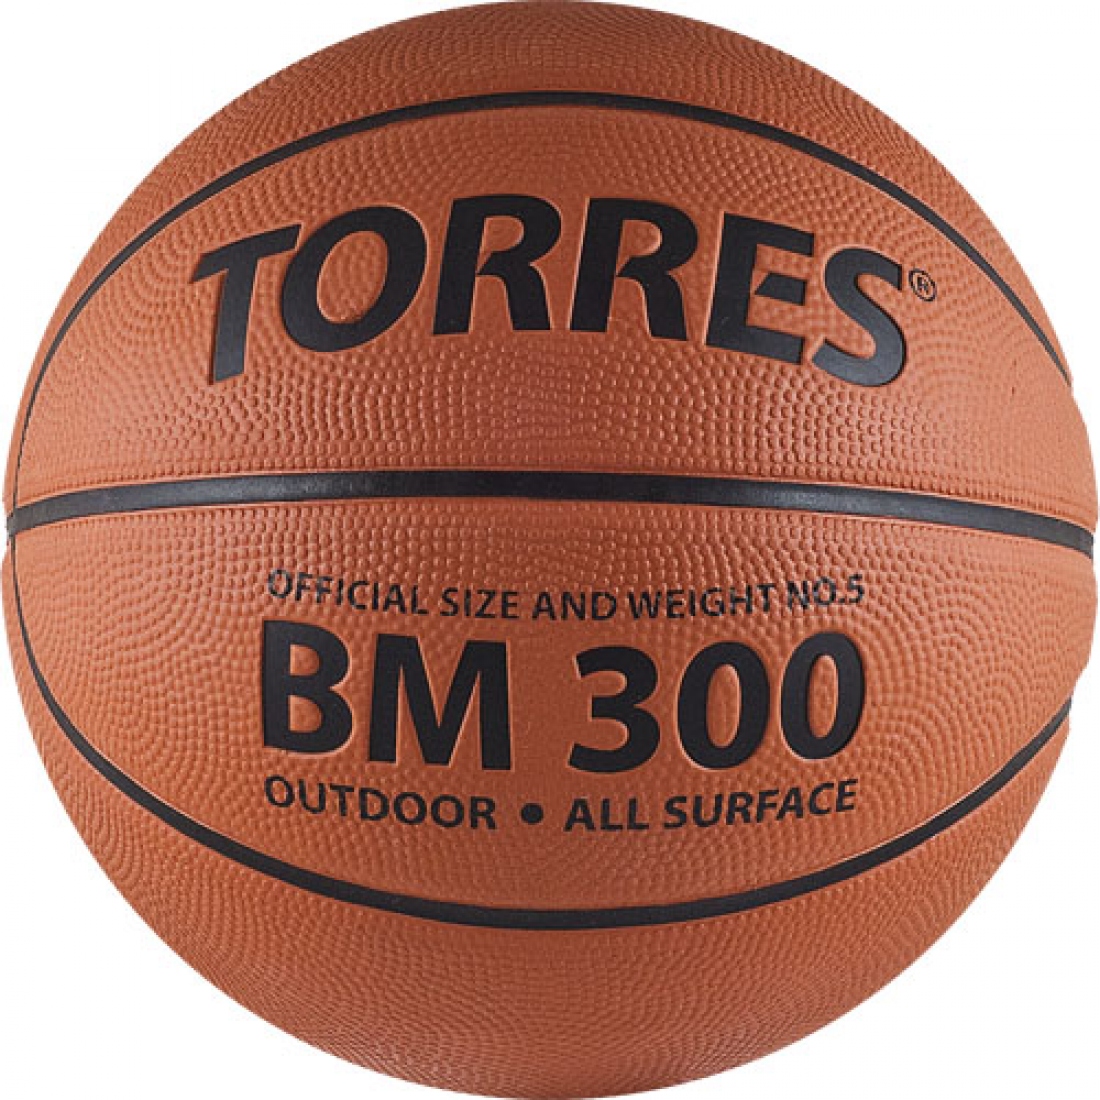 Мяч баскетбольный TORRES BM300 цвет темнооранжевый, черный размер 5